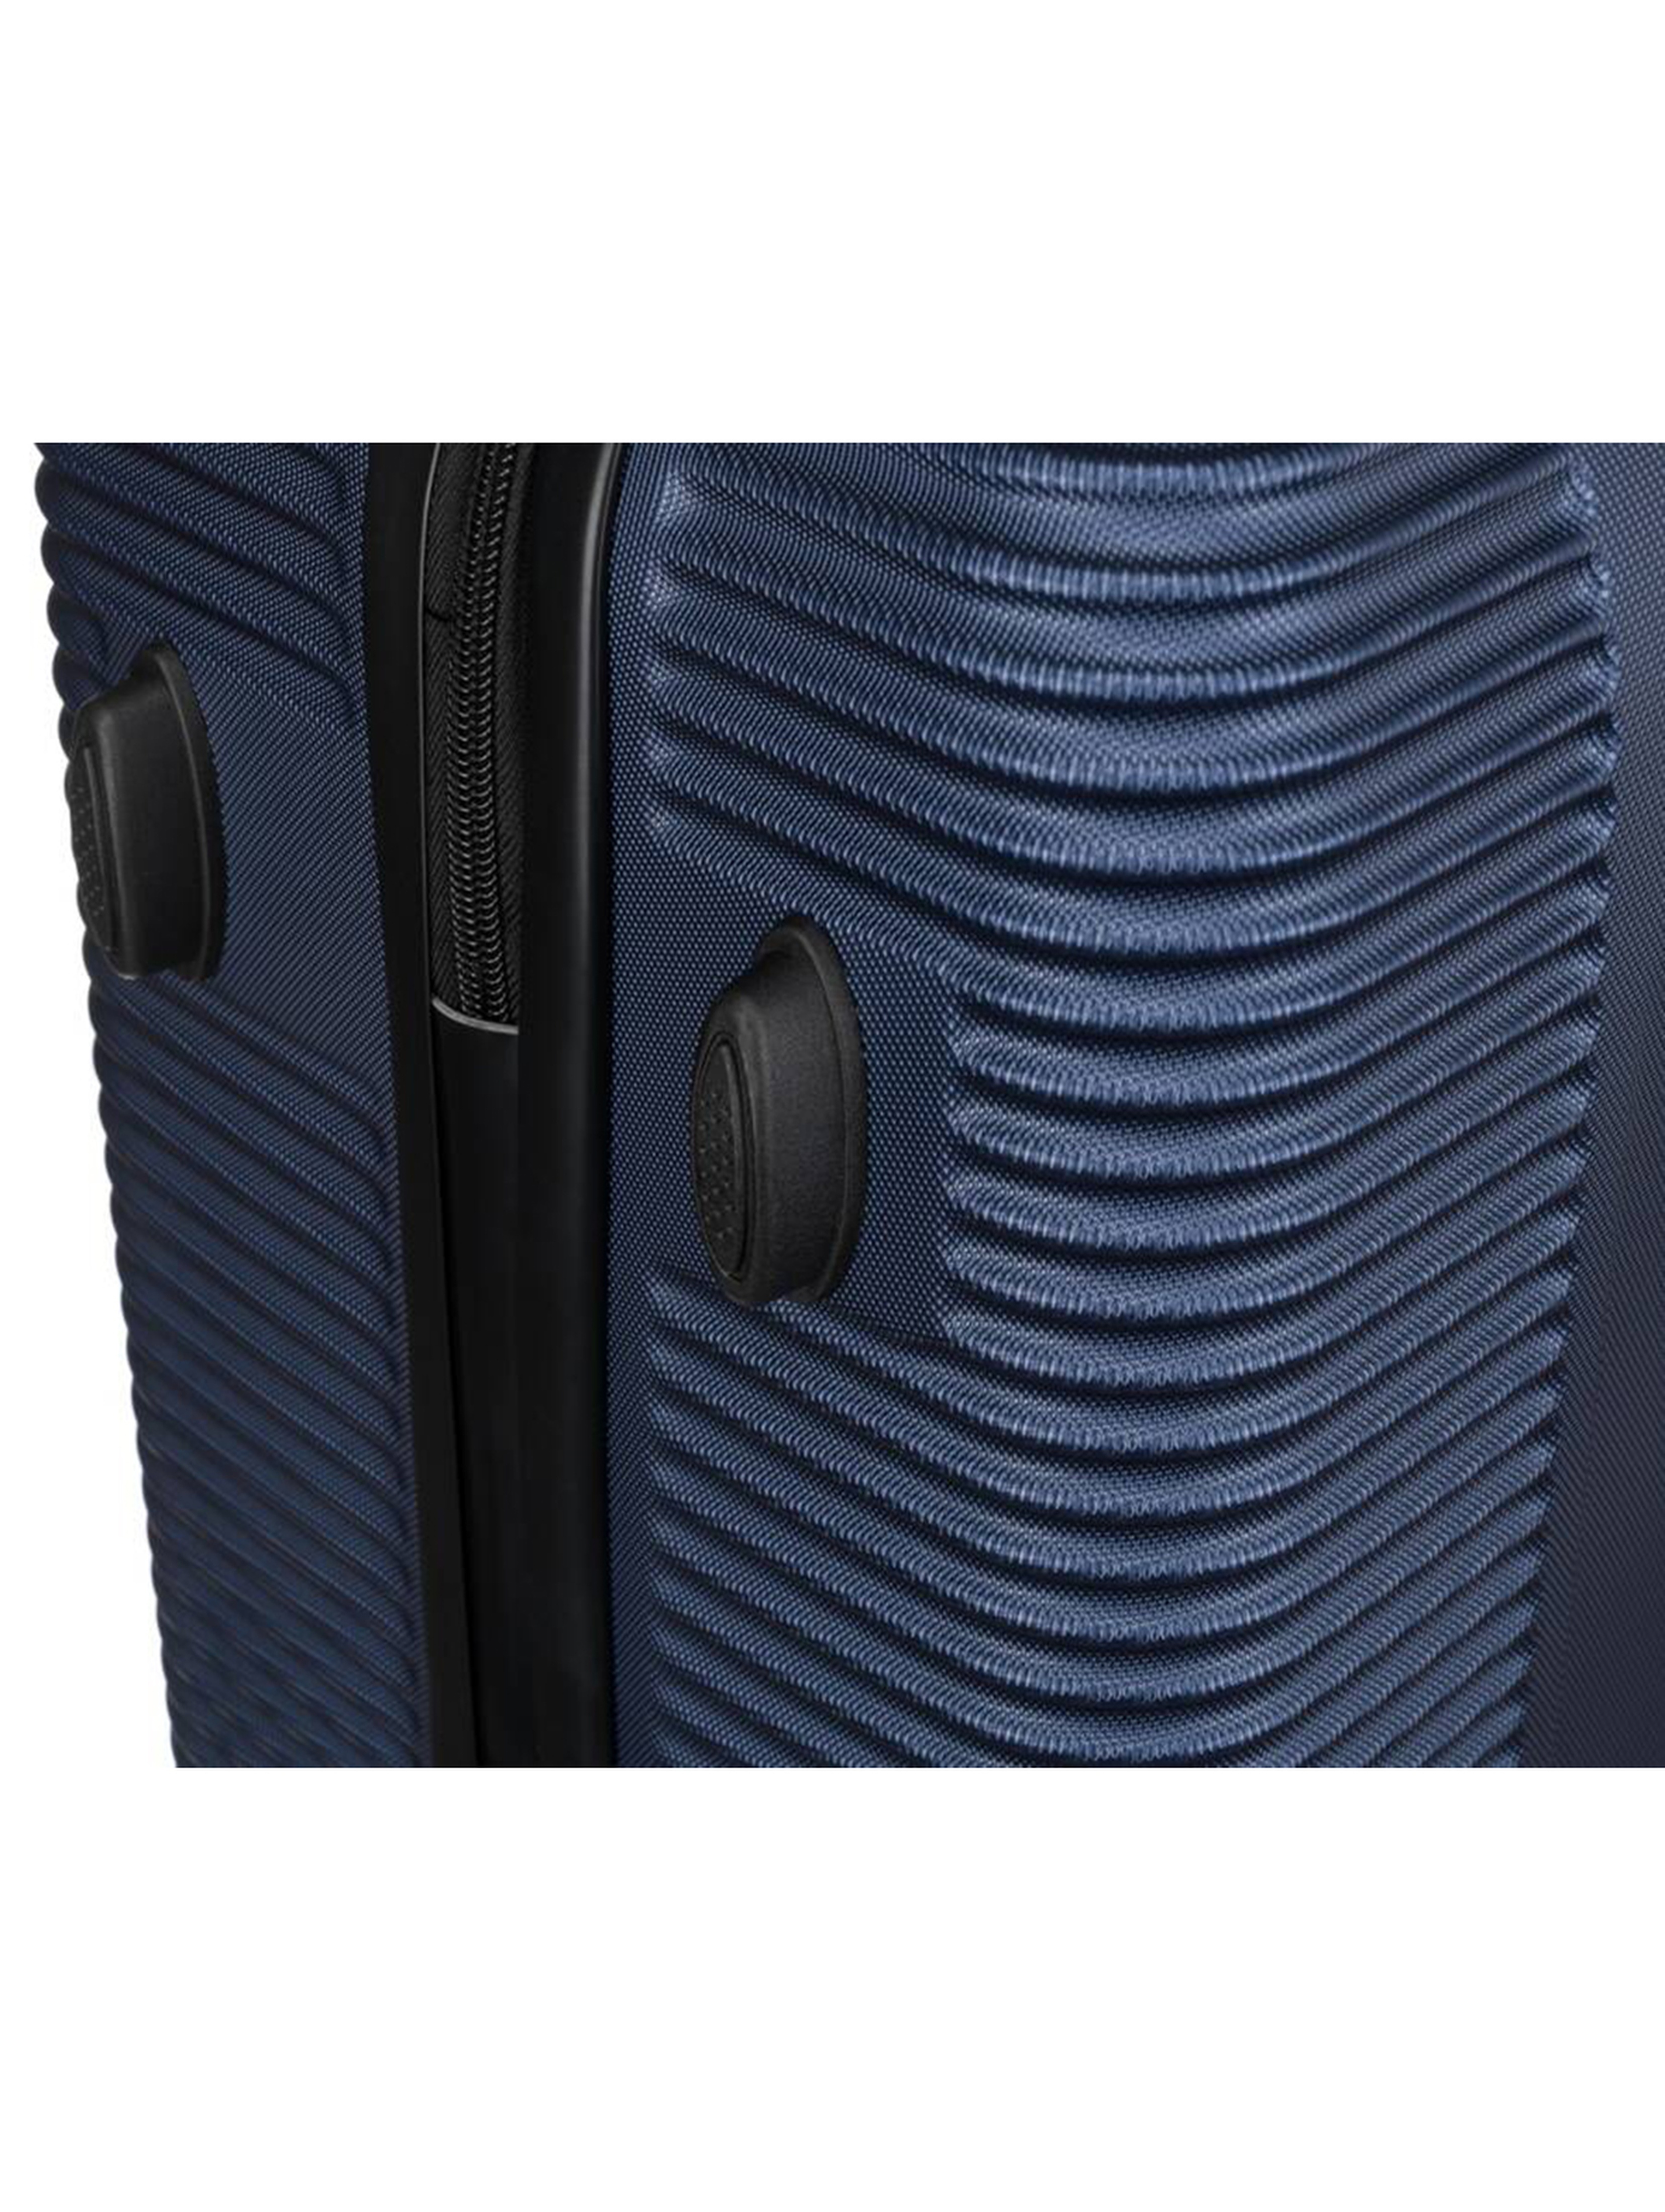 Mała walizka kabinowa z tworzywa ABS+ — Peterson granatowa